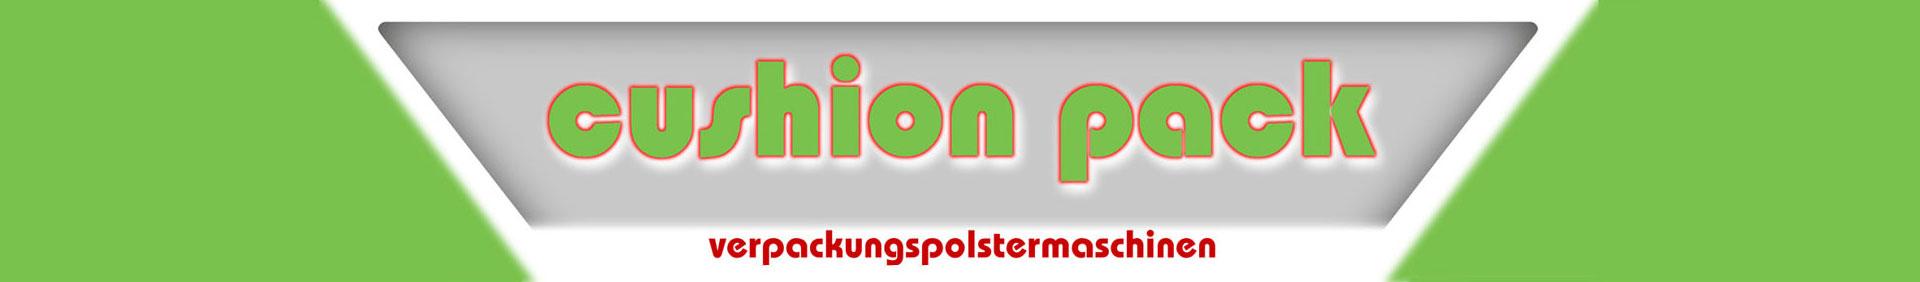 cp cushion pack GmbH   Co. KG Logo